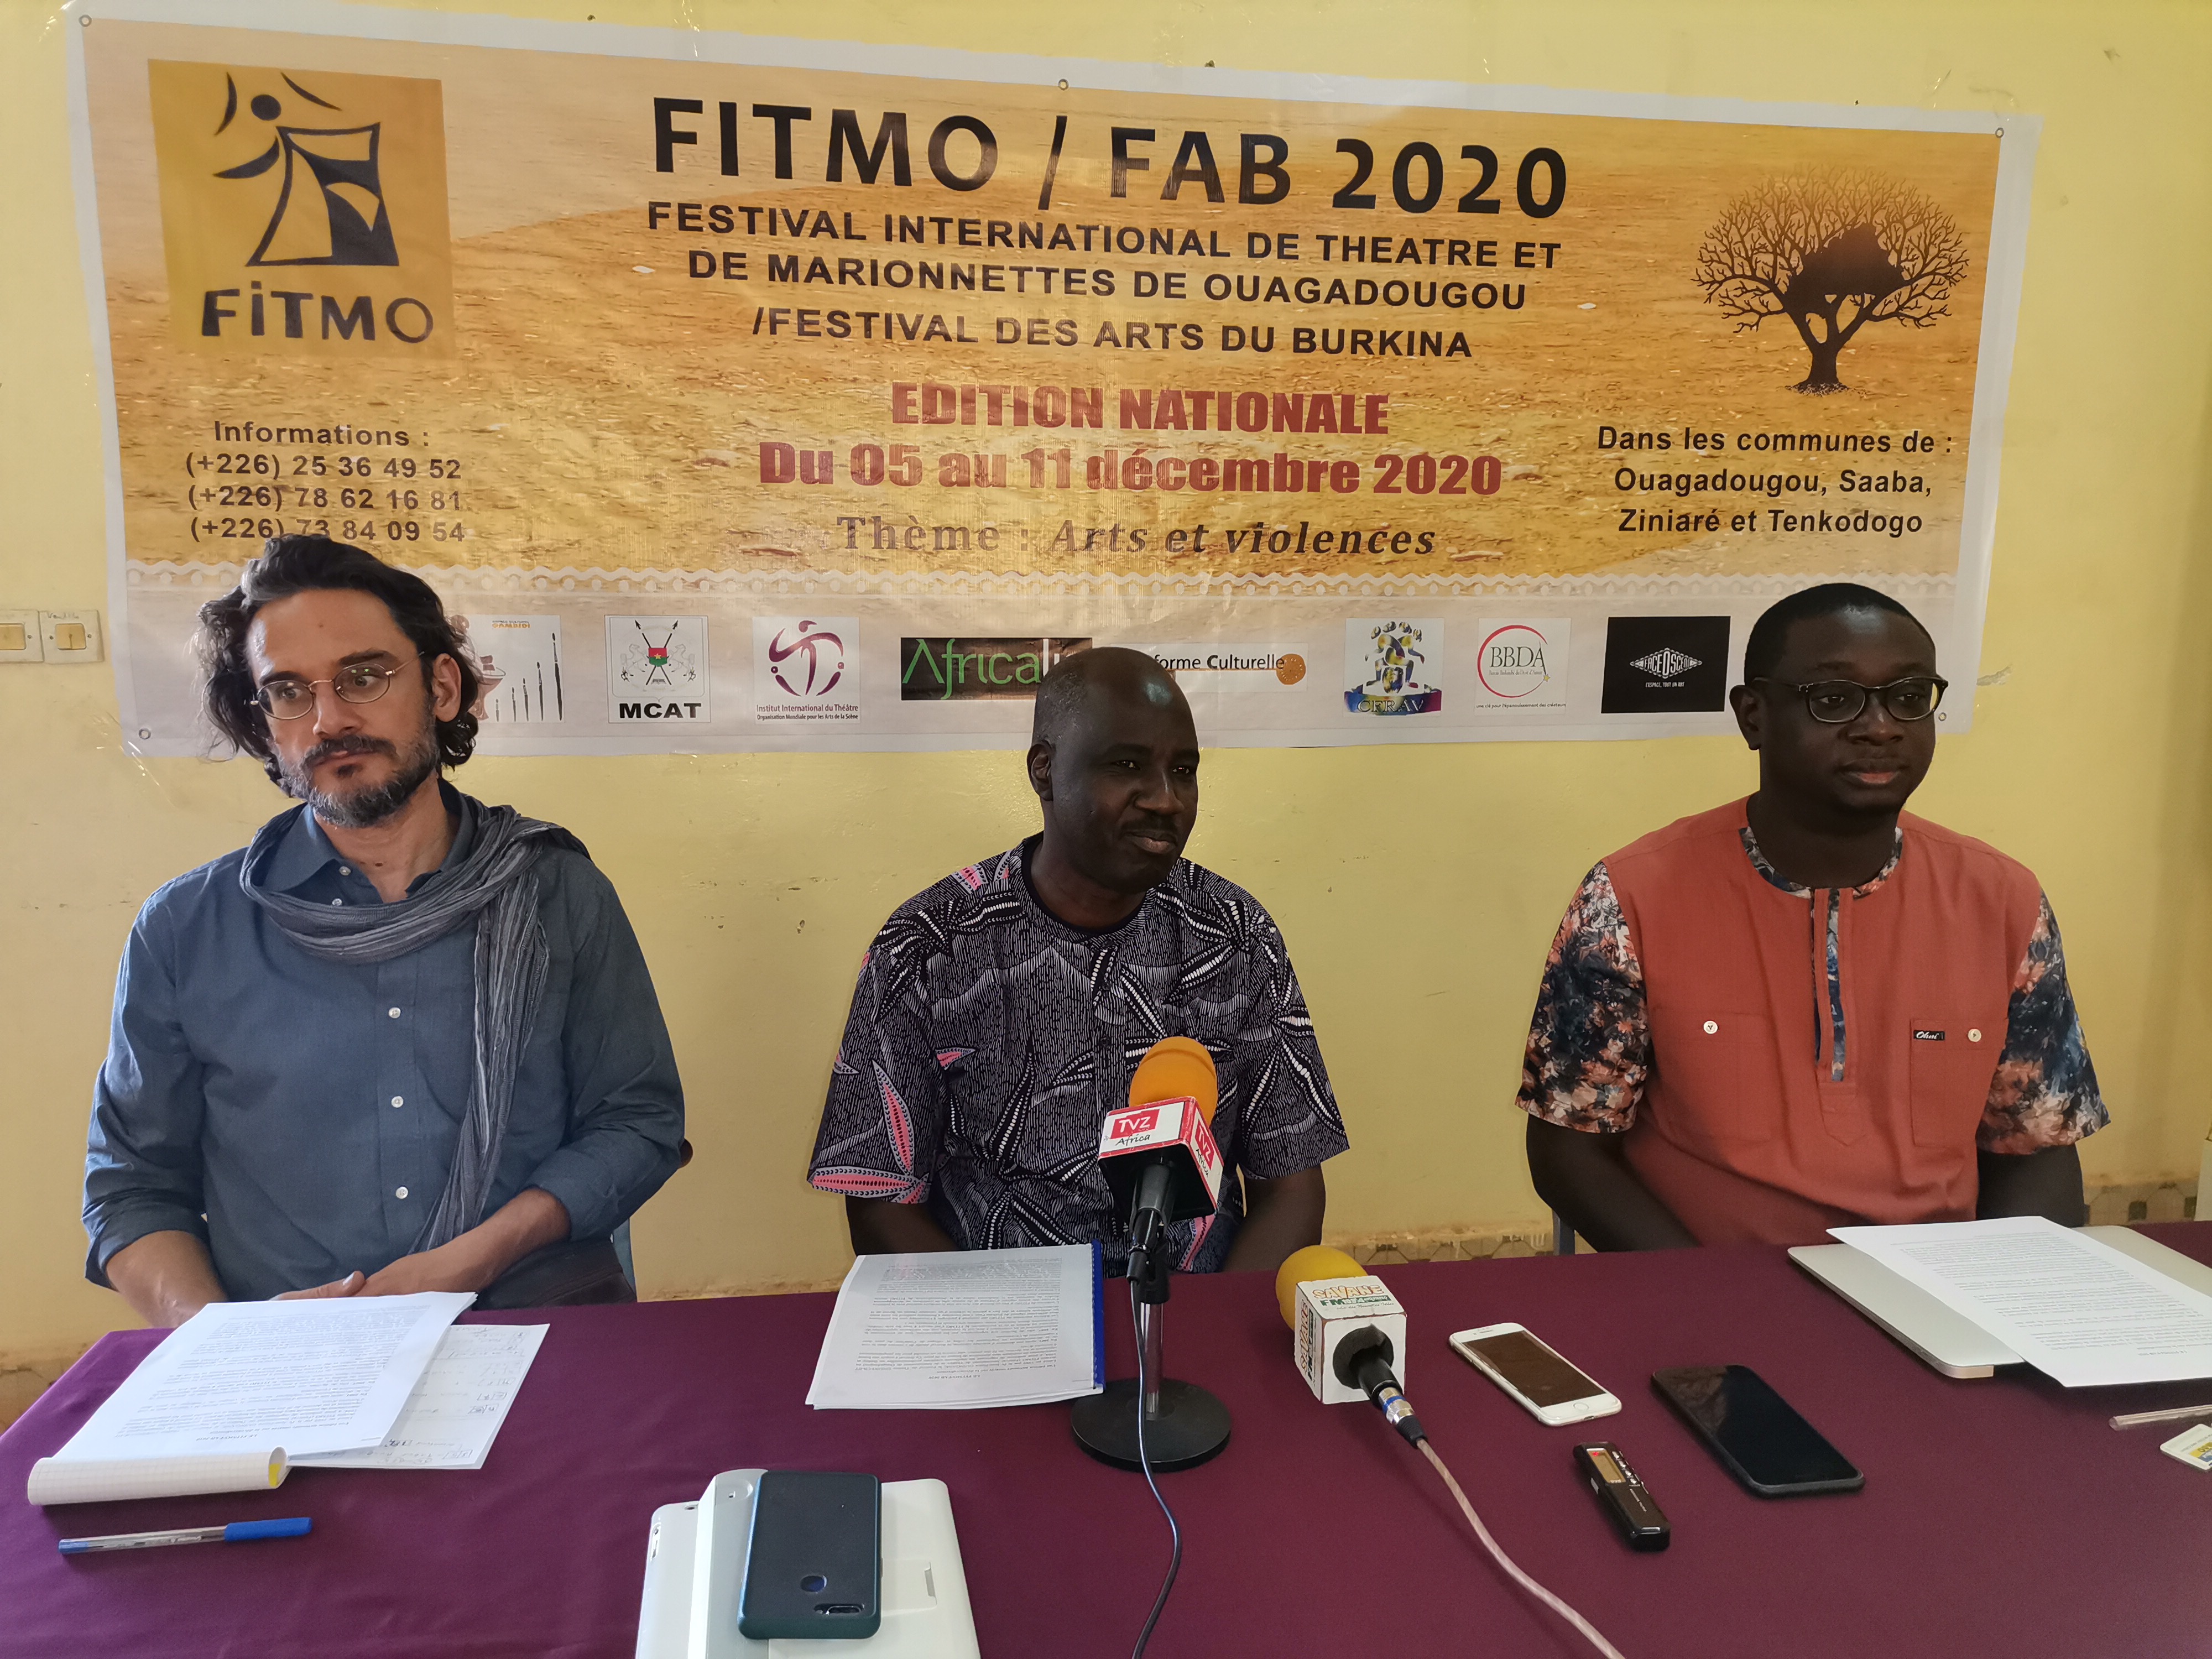 FITMO/FAB 2020 : Une nouvelle édition nationale consacrée à la décentralisation